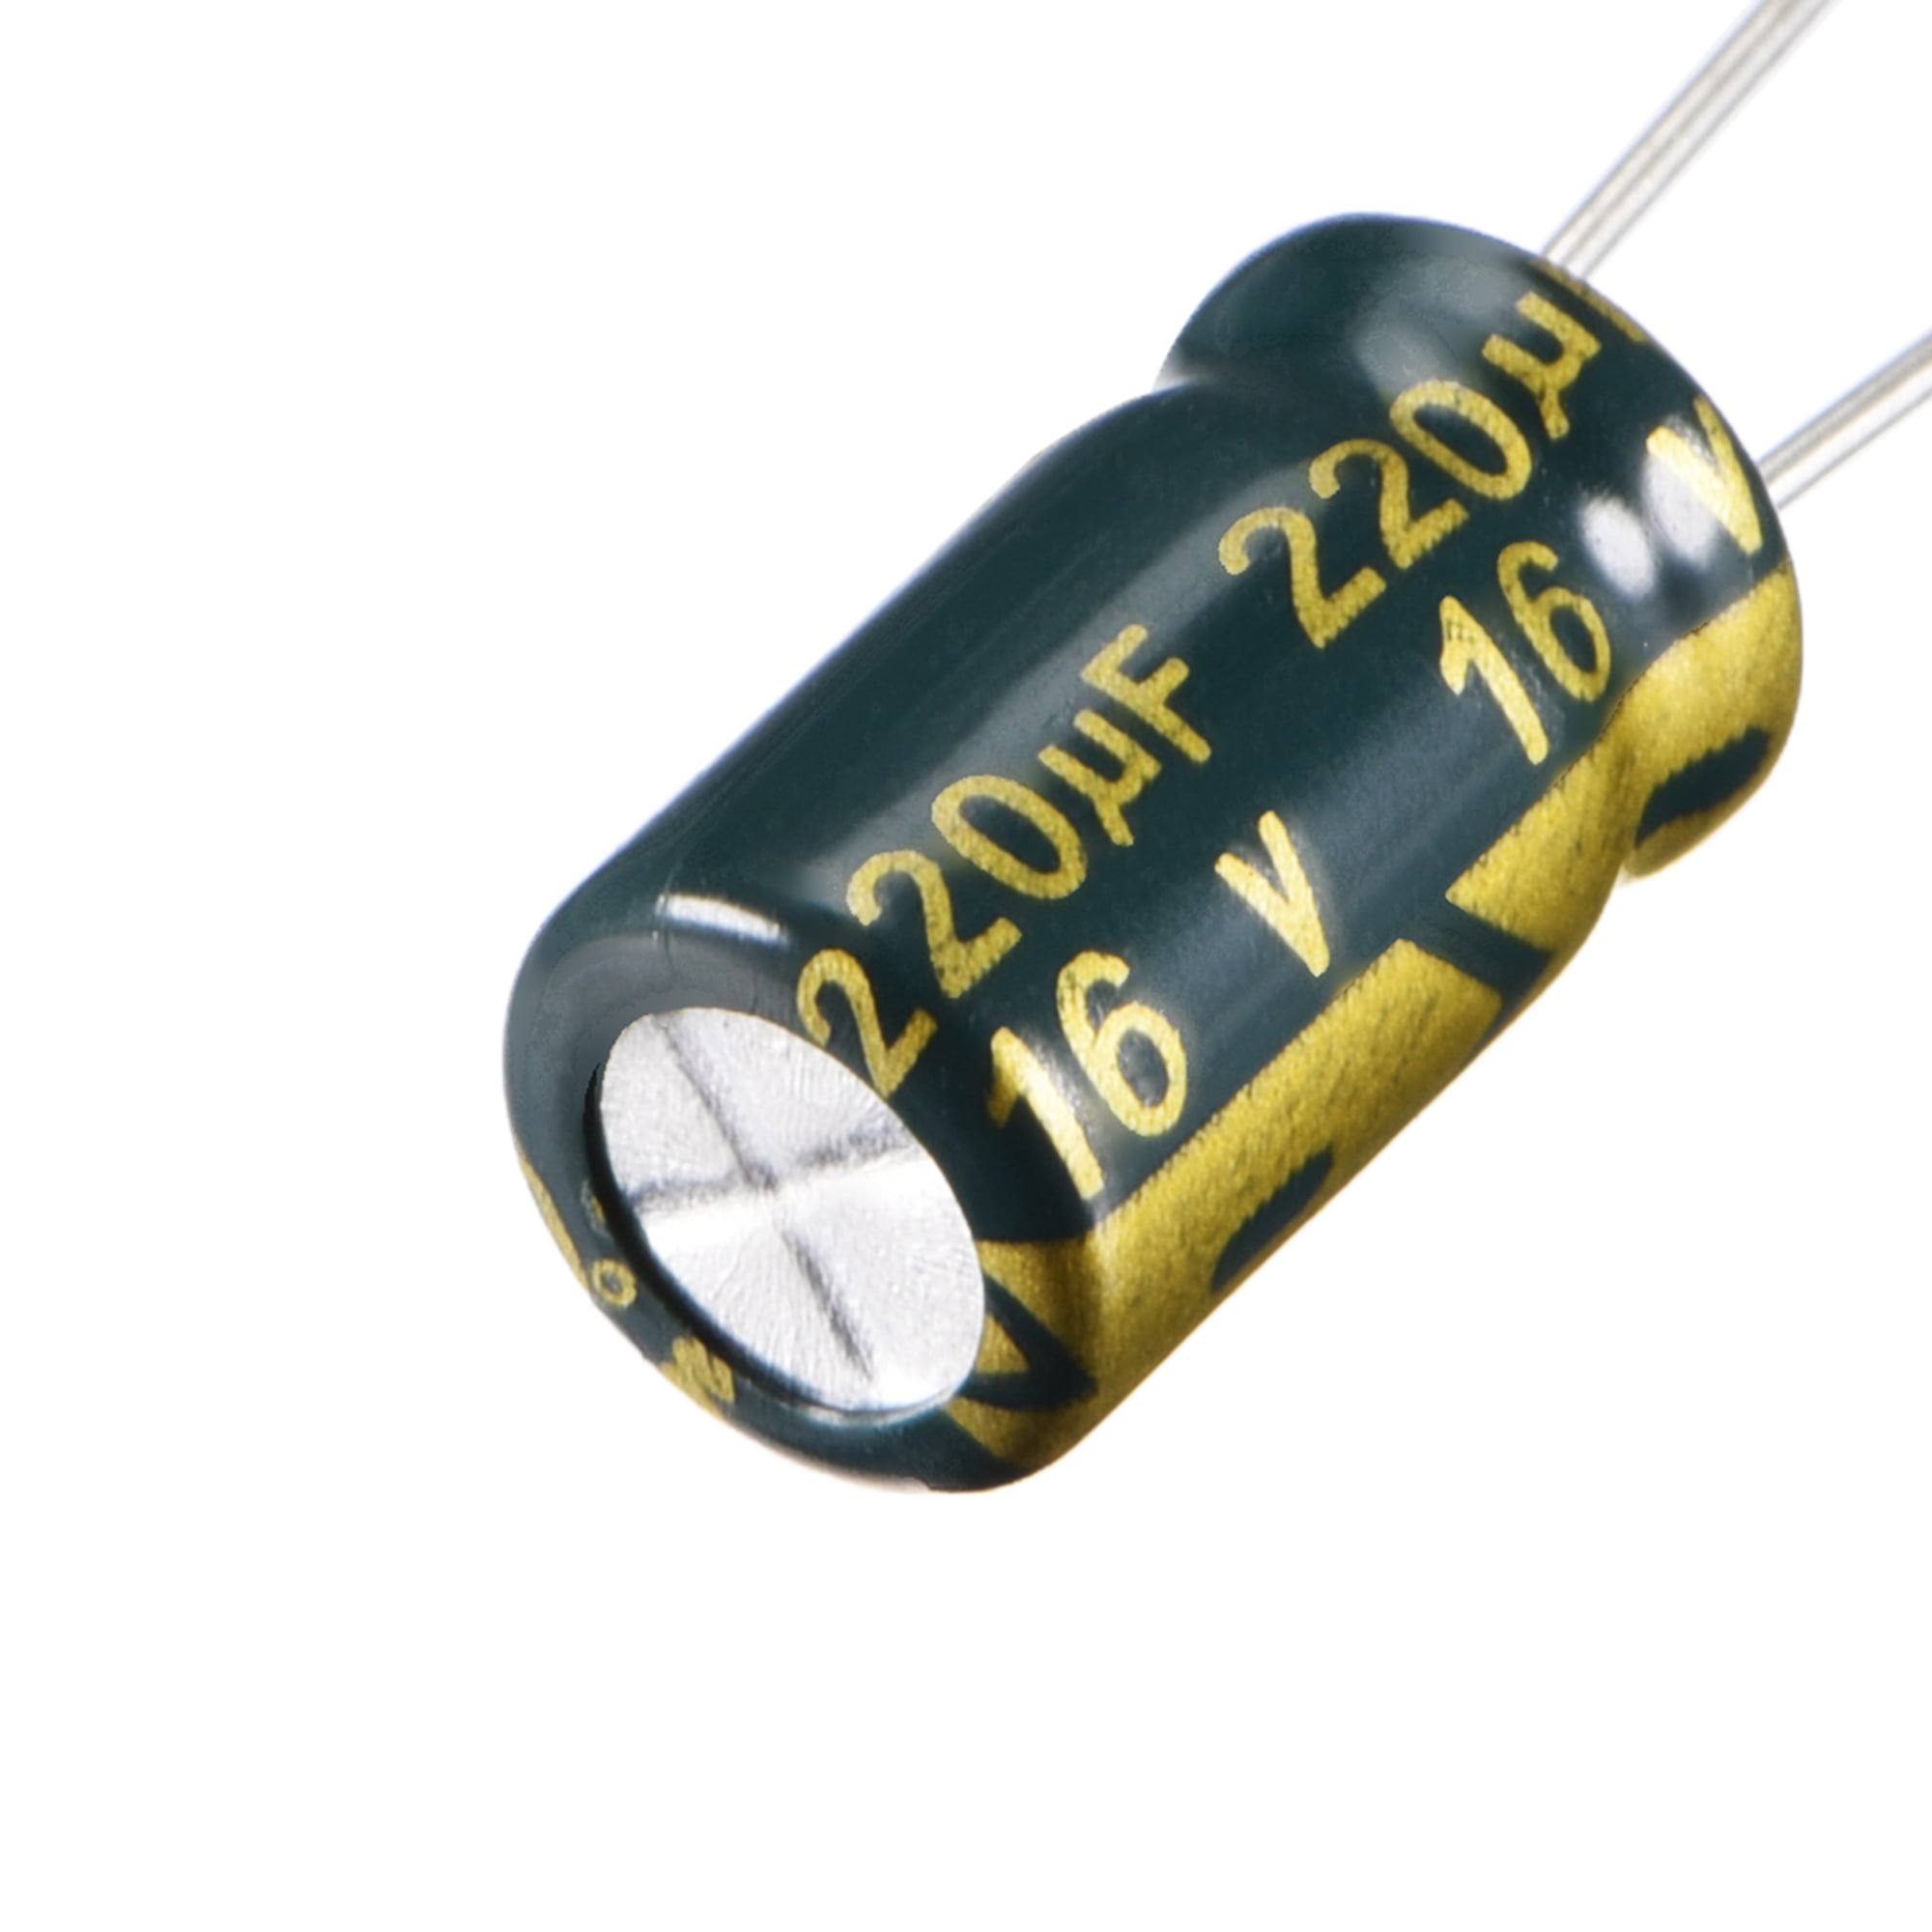 2stk roe Roederstein eku 220uf/16v bipolar radial Electrolytic capacitor/nos 